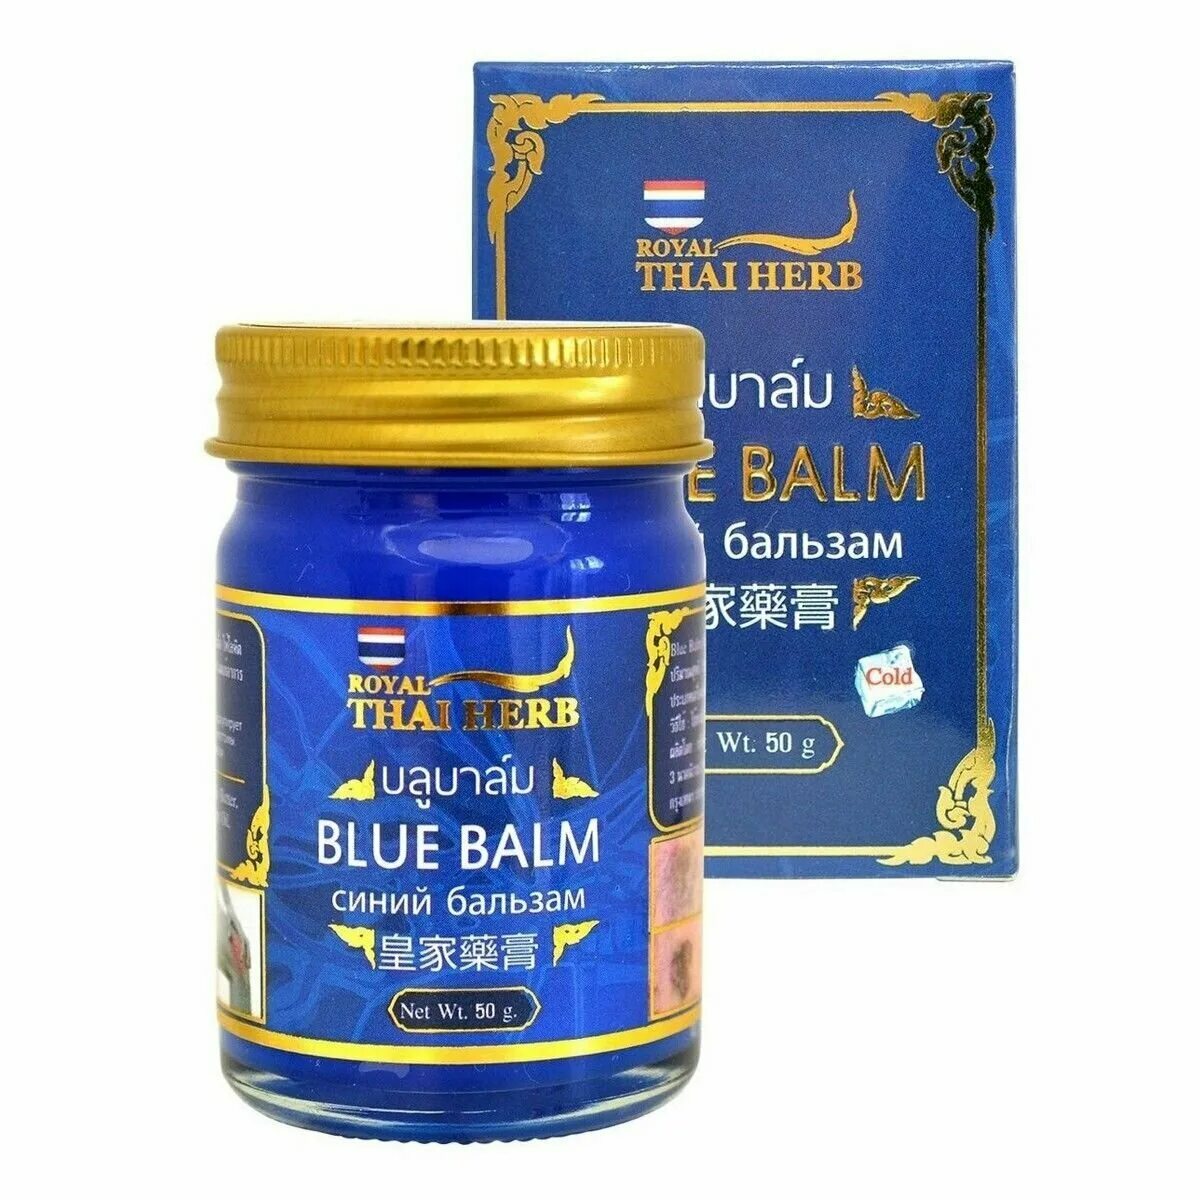 Тайская звездочка. Тайский синий бальзам — Royal Thai Herb. Blue Balm синий бальзам. Бальзам Королевская Кобра Royal Thai Herb 50 гр. Blue Balm синий бальзам Wattana Herb.